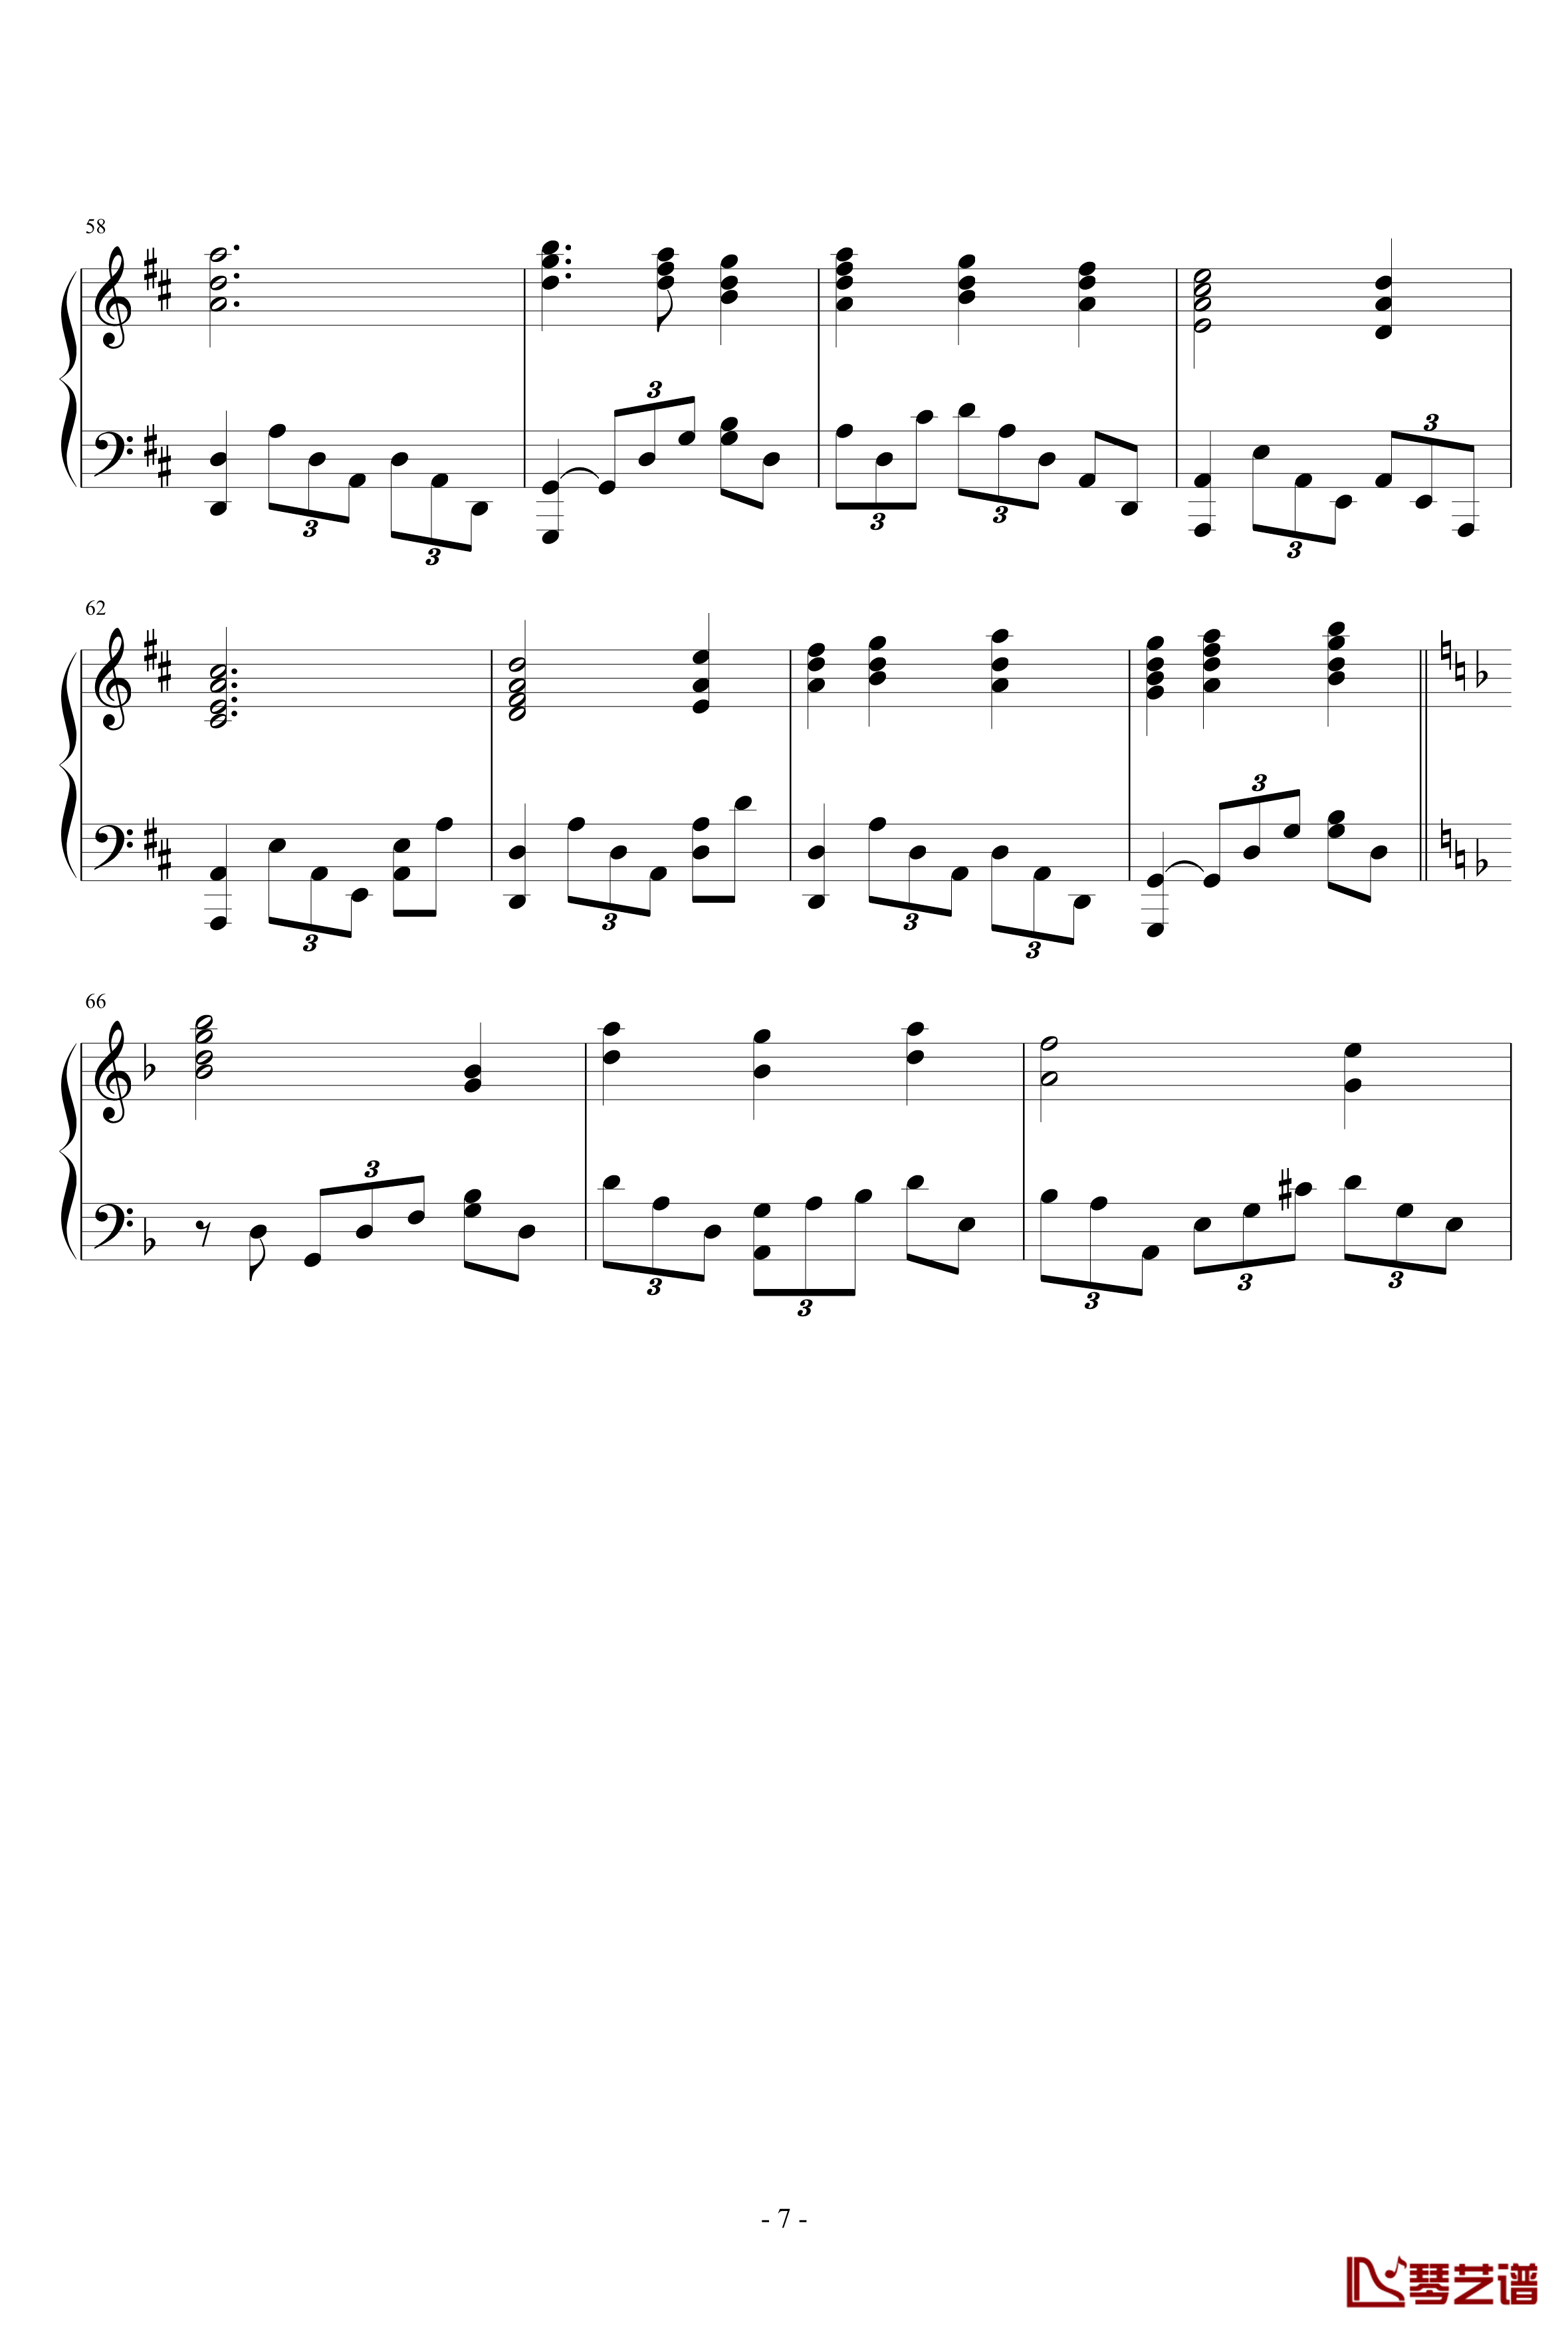 小前奏曲钢琴谱-yangzhen0817